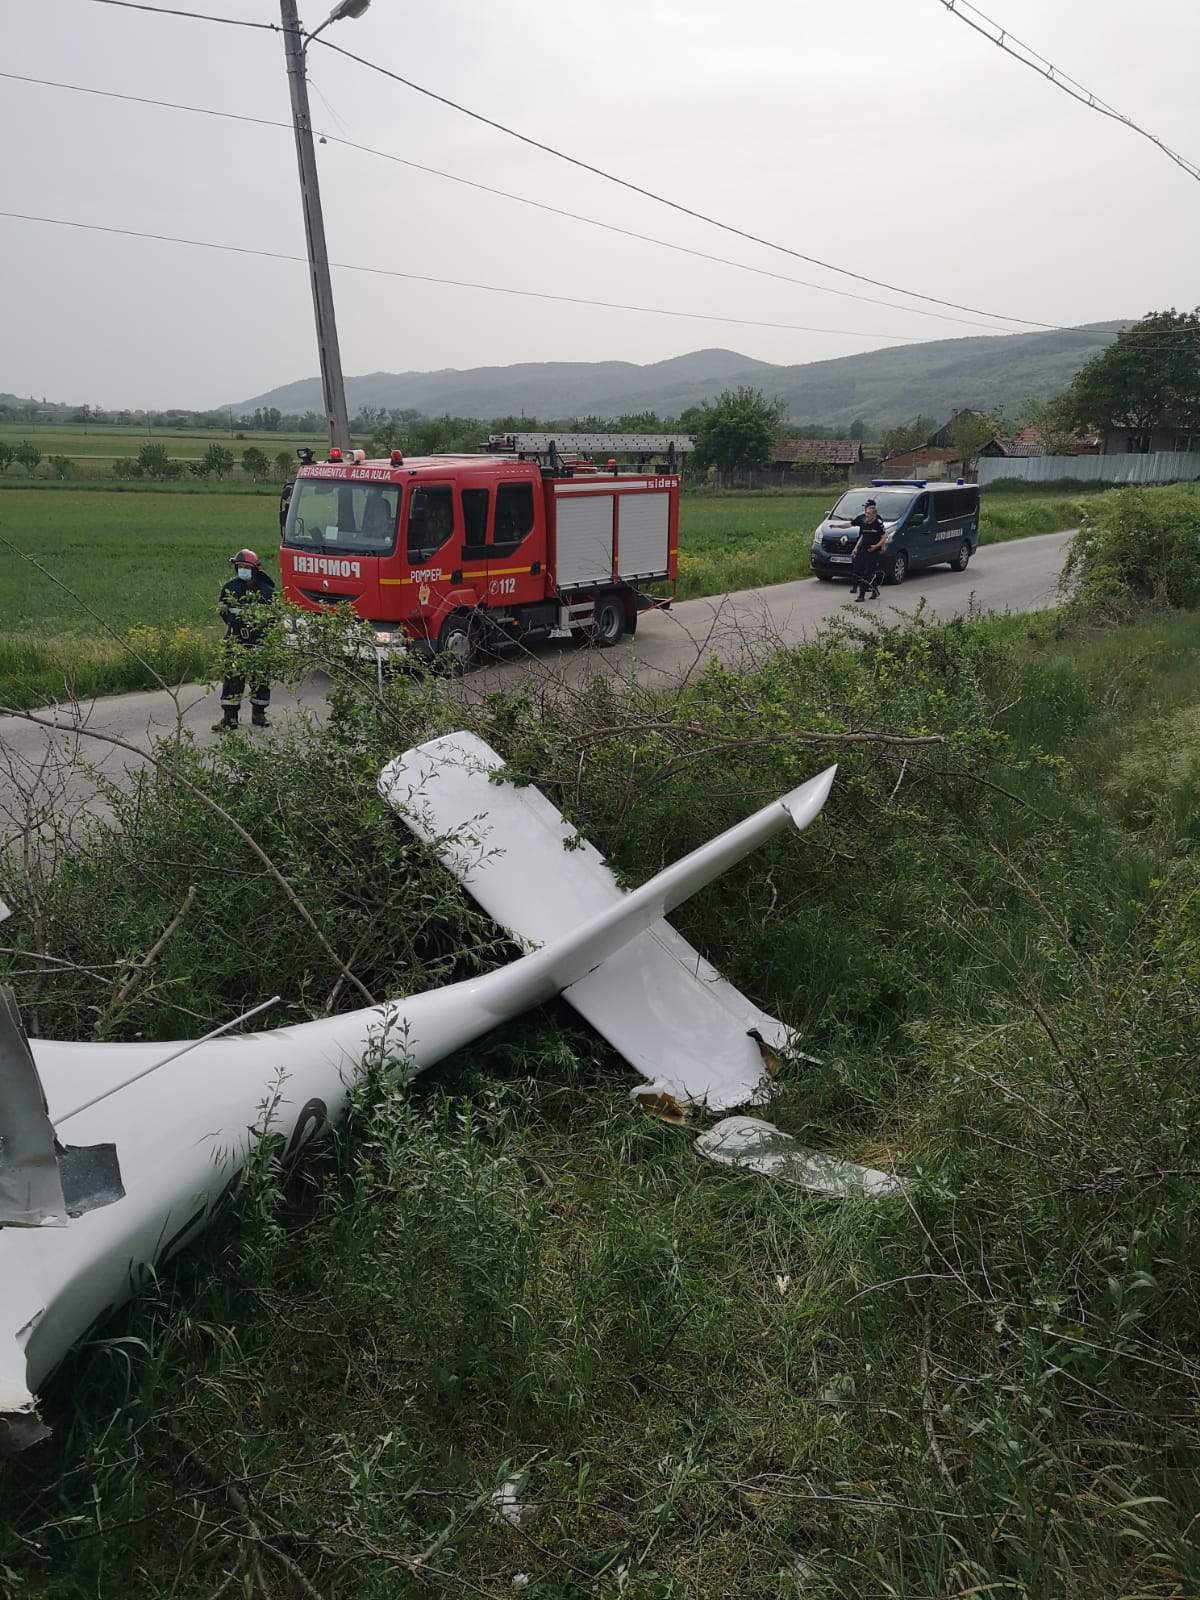 VIDEO / Accident aviatic în județul Alba! Echipele de intervenție au ajuns de urgență la fața locului. În ce stare se află pilotul